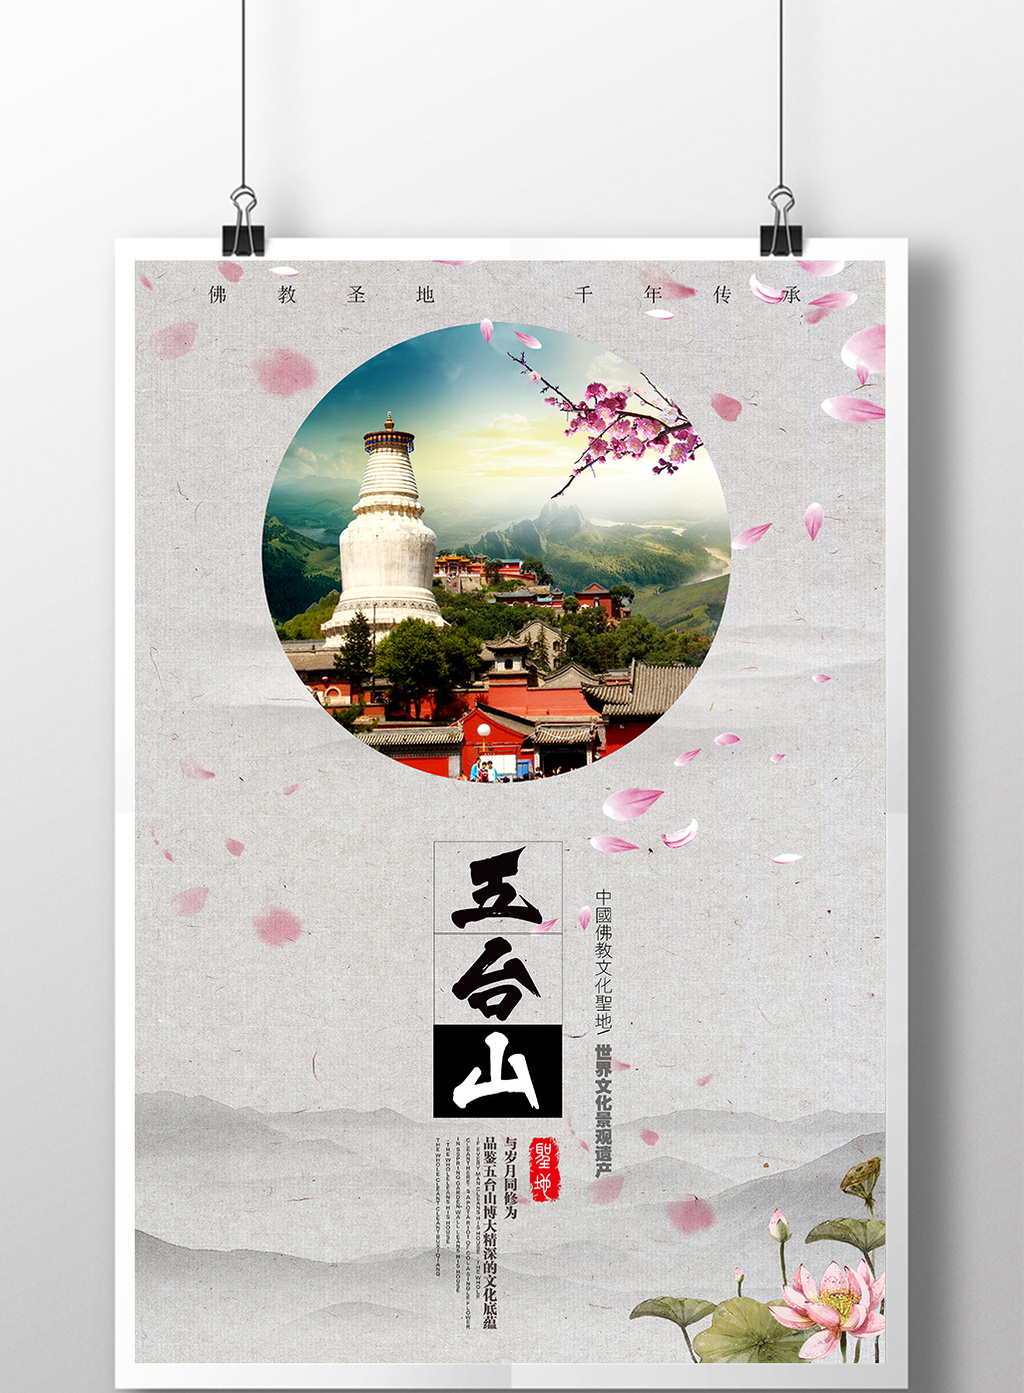 中国风五台山旅行主题海报高清psd图片设计素材免费下载